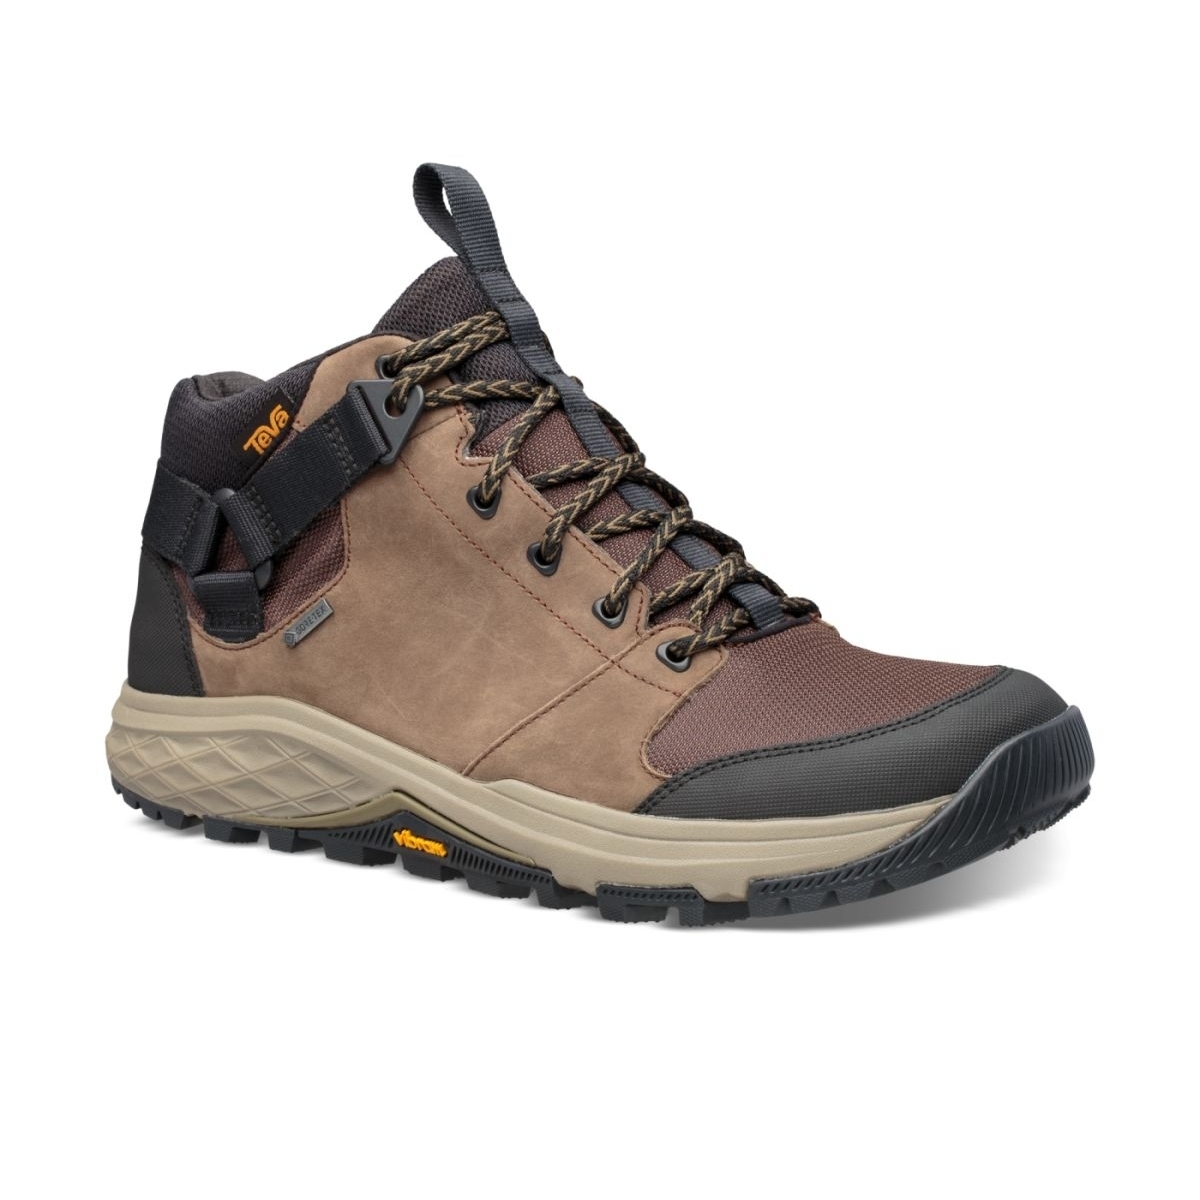 Teva Men's Grandview Mid Gore-Tex Hiking Shoe Chocolate Chip - 1106804-CCHP CHOCOLATE CHIP - CHOCOLATE CHIP, 8.5